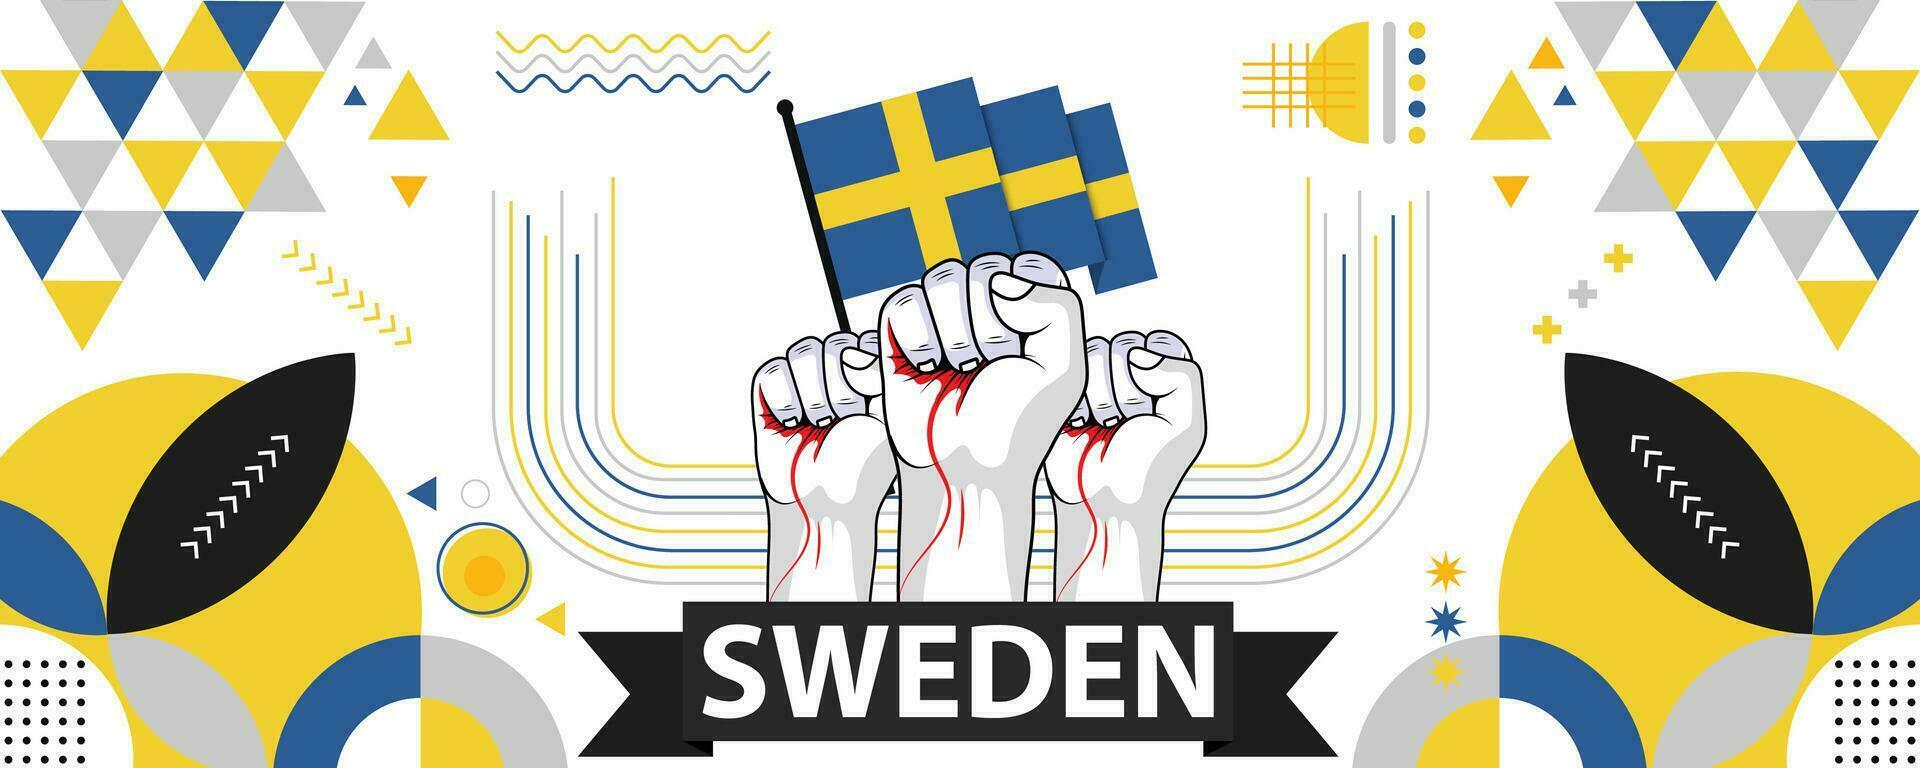 Suède nationale ou indépendance journée bannière pour pays fête. drapeau de suédois avec élevé poings. moderne rétro conception avec typorgaphie abstrait géométrique Icônes. vecteur illustration.